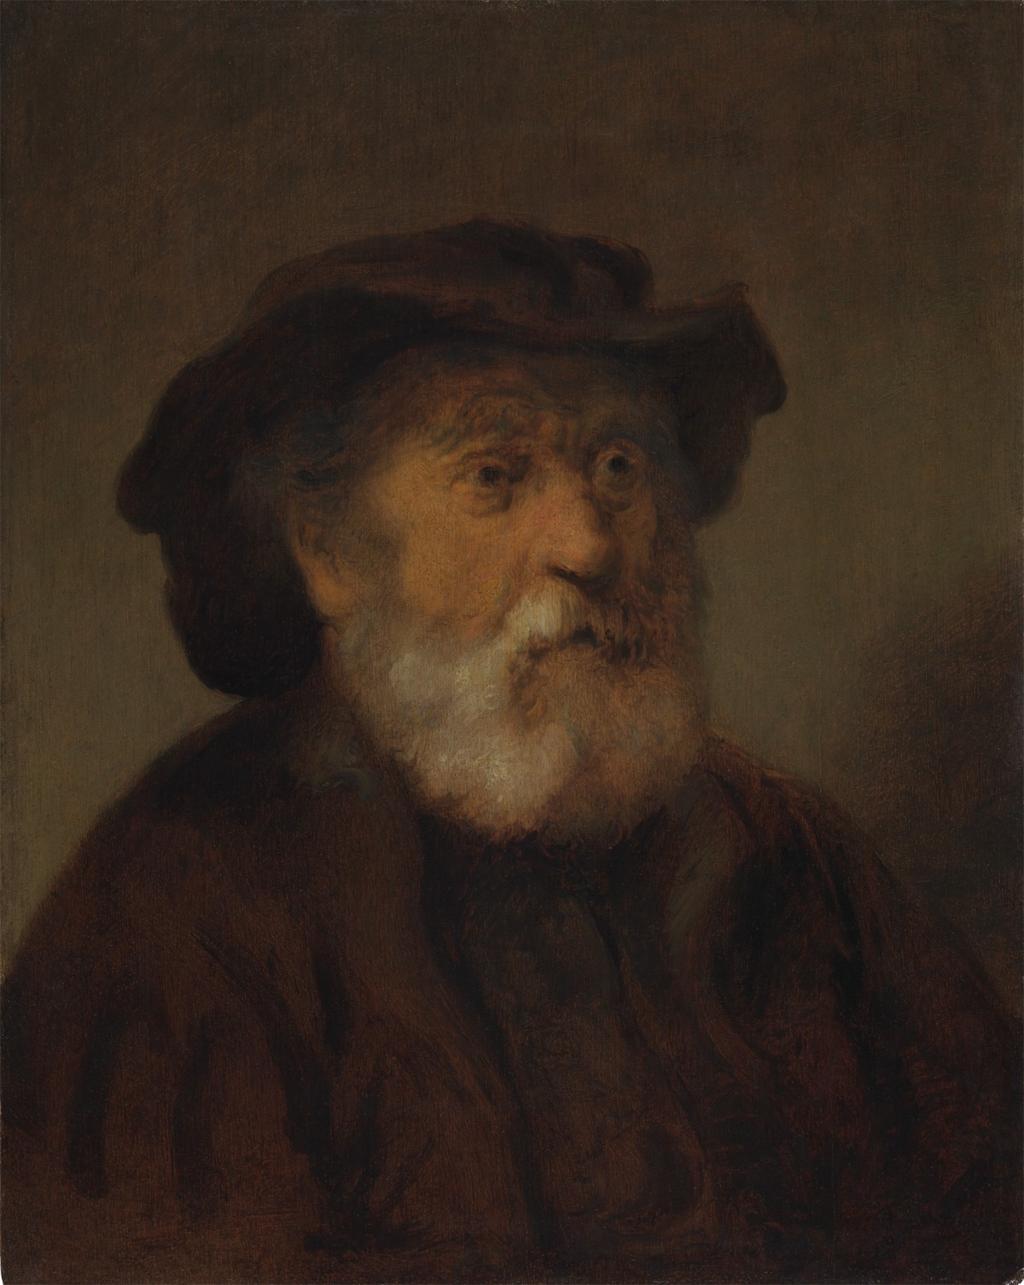 ca. 1650 Rembrandt, School, probably